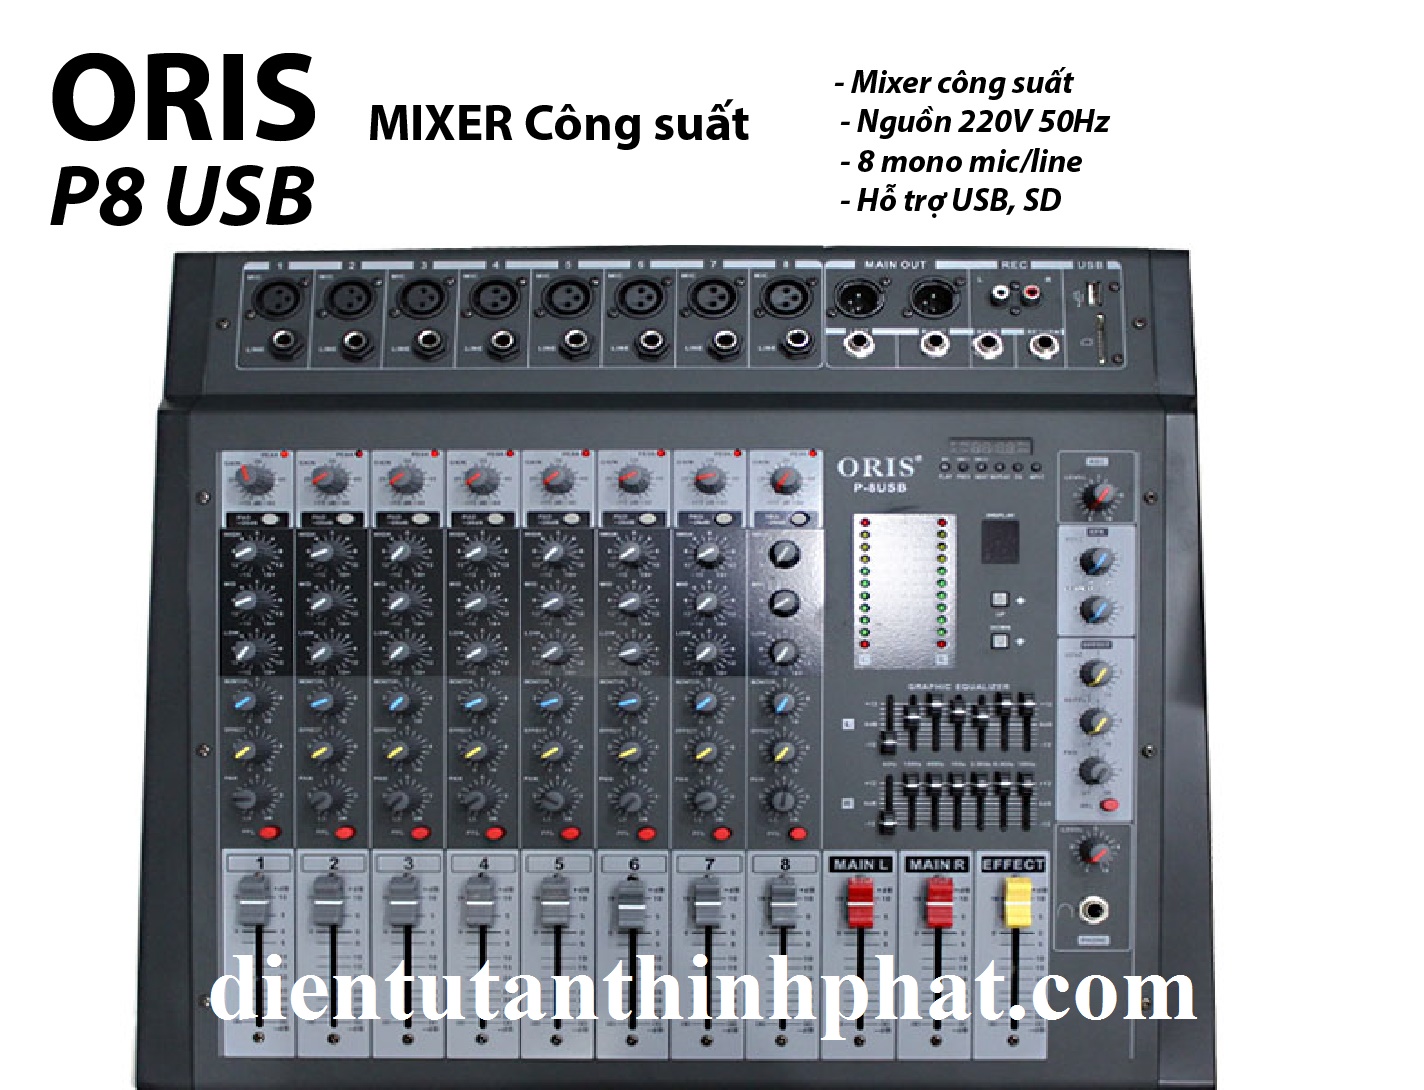 Bàn mixer công suất oris P8 USB